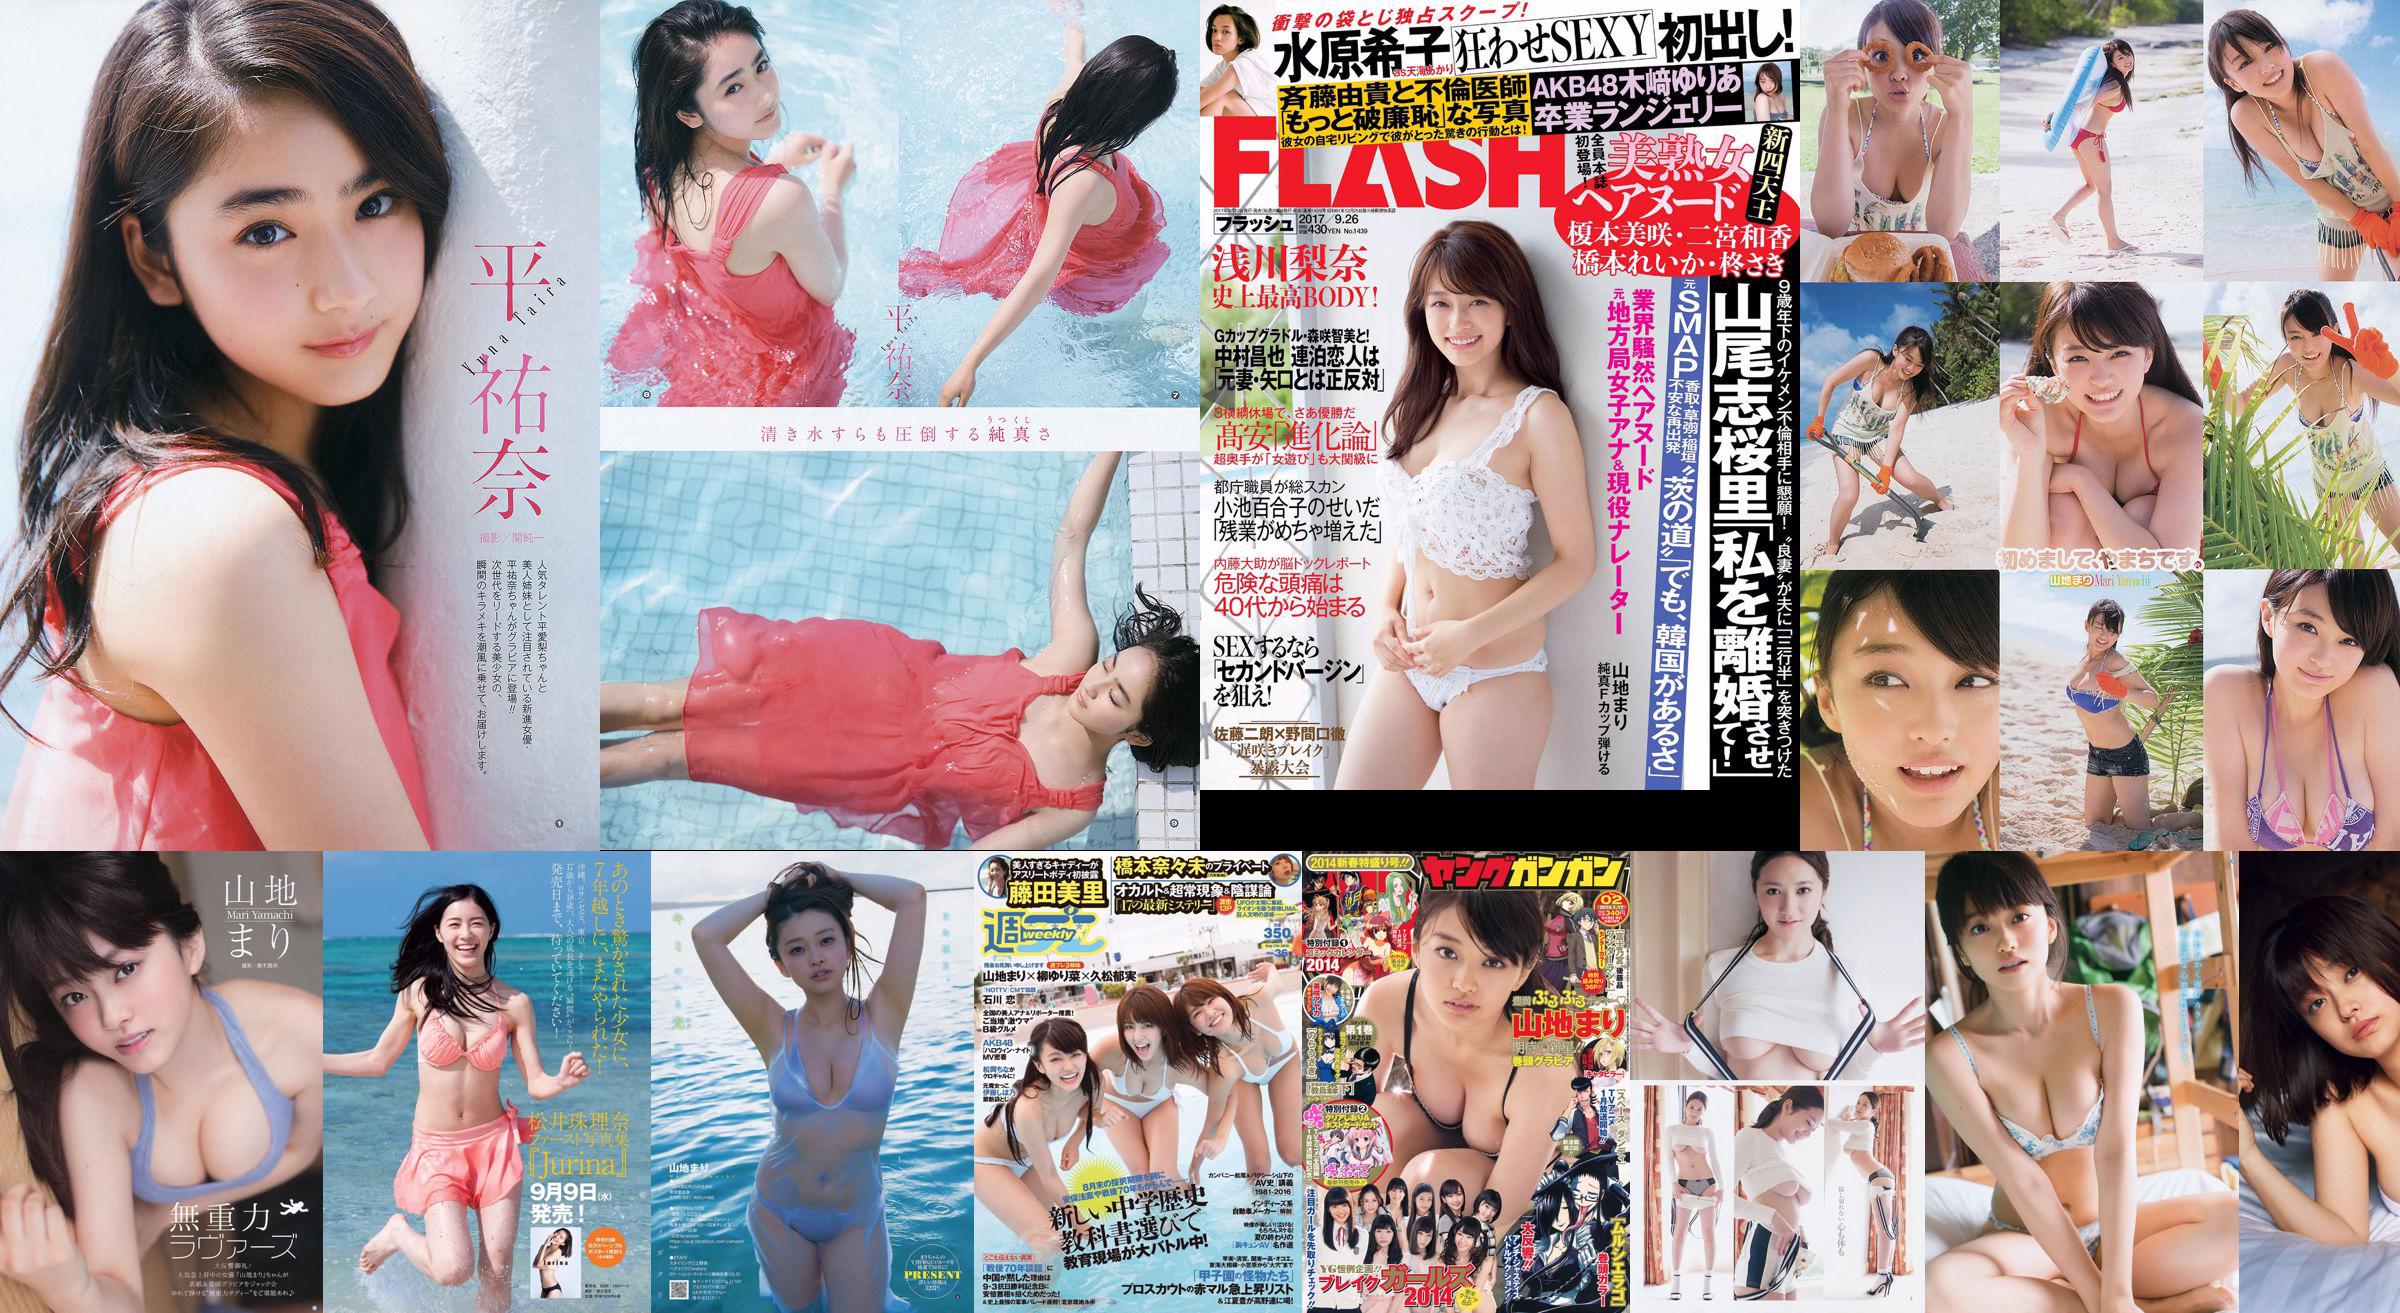 Berg Mari Matsumoto Erika Tang Tian Erika Shionji Misumi Takahashi Walnoot Watanabe Miyuki [Weekly Playboy] 2016 No.30 Photo Magazine No.1b308c Pagina 2